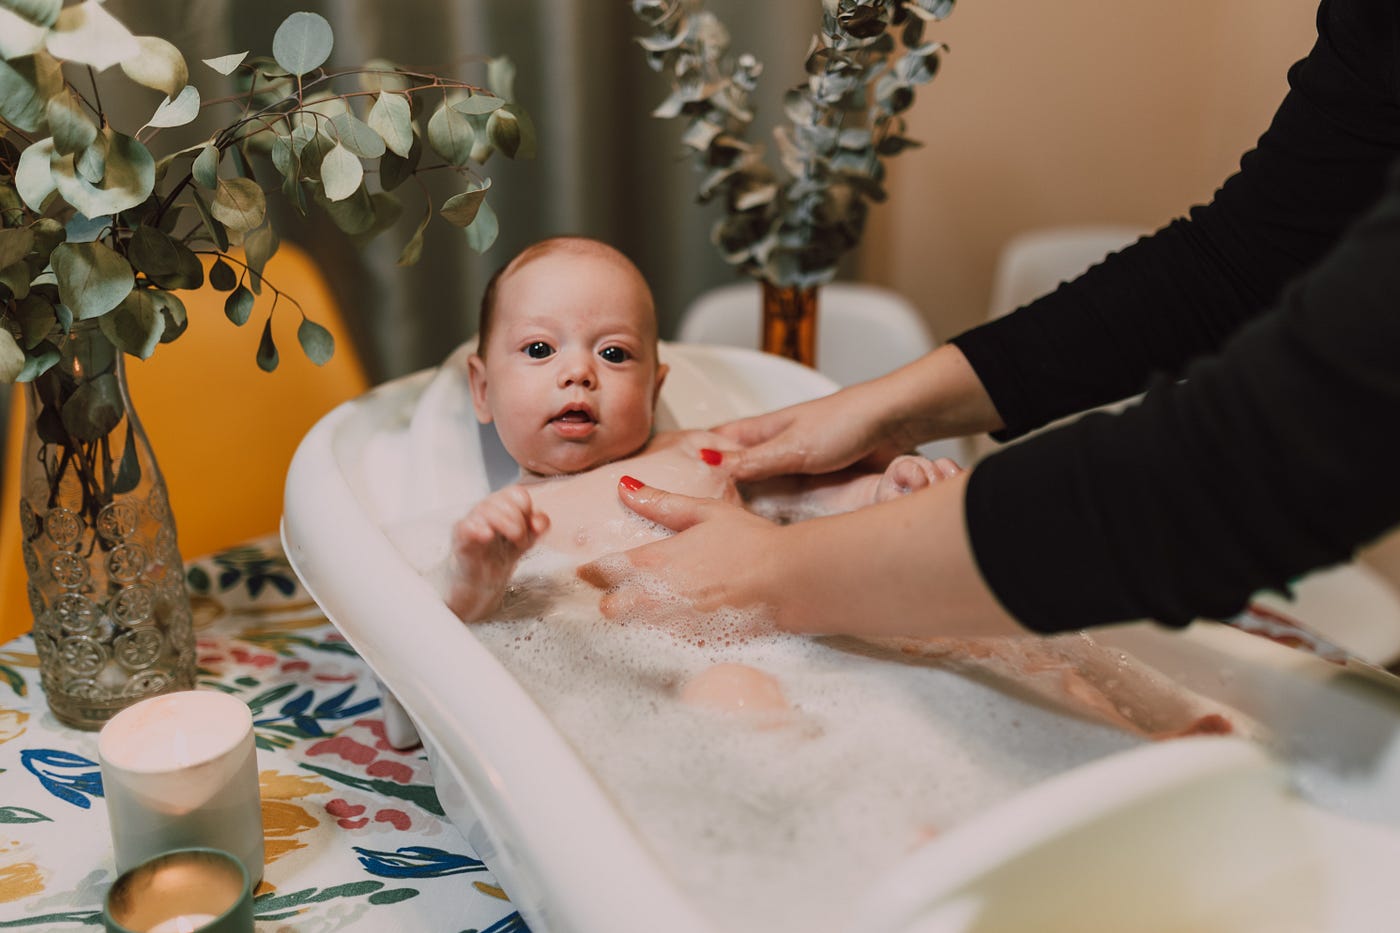 Baby Bath Essentials